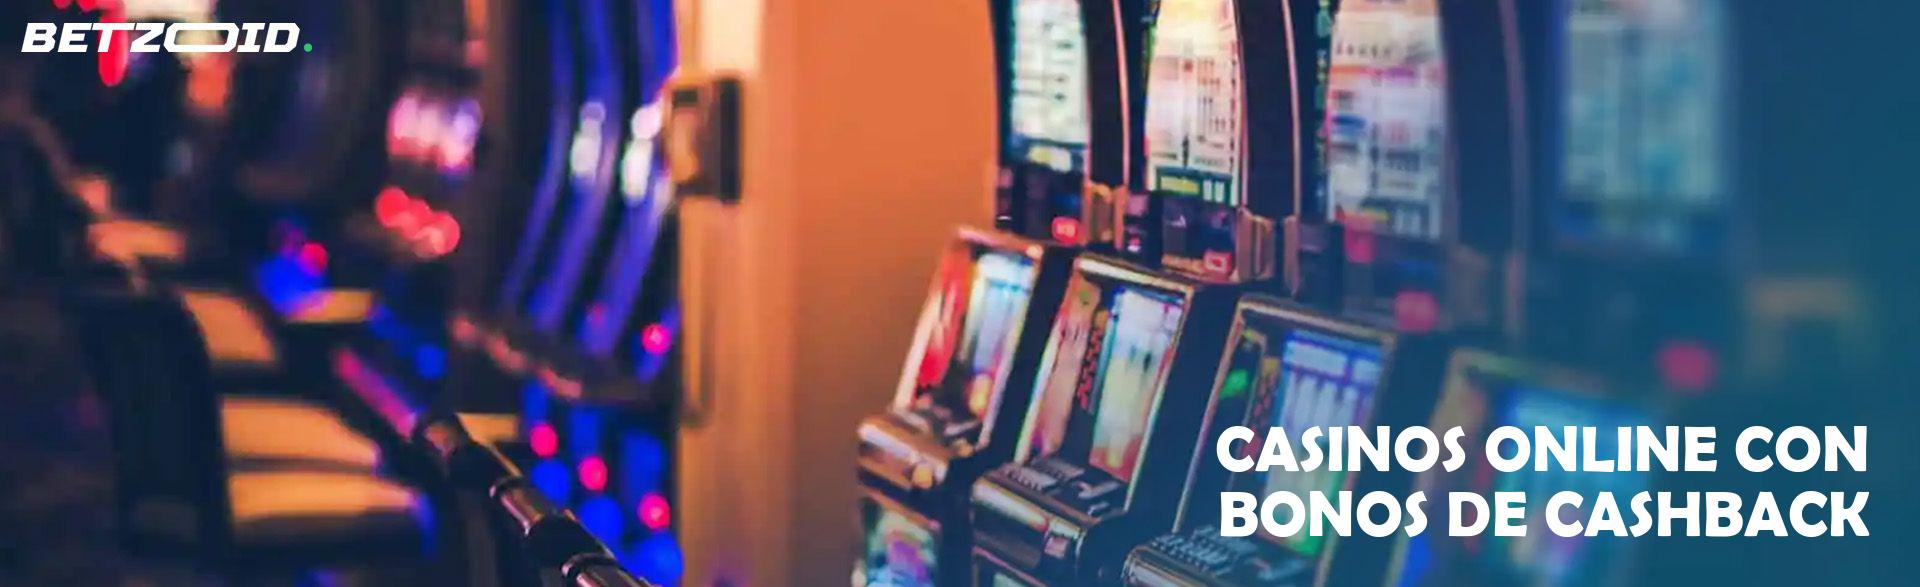 Casinos Online con Bonos de Cashback.